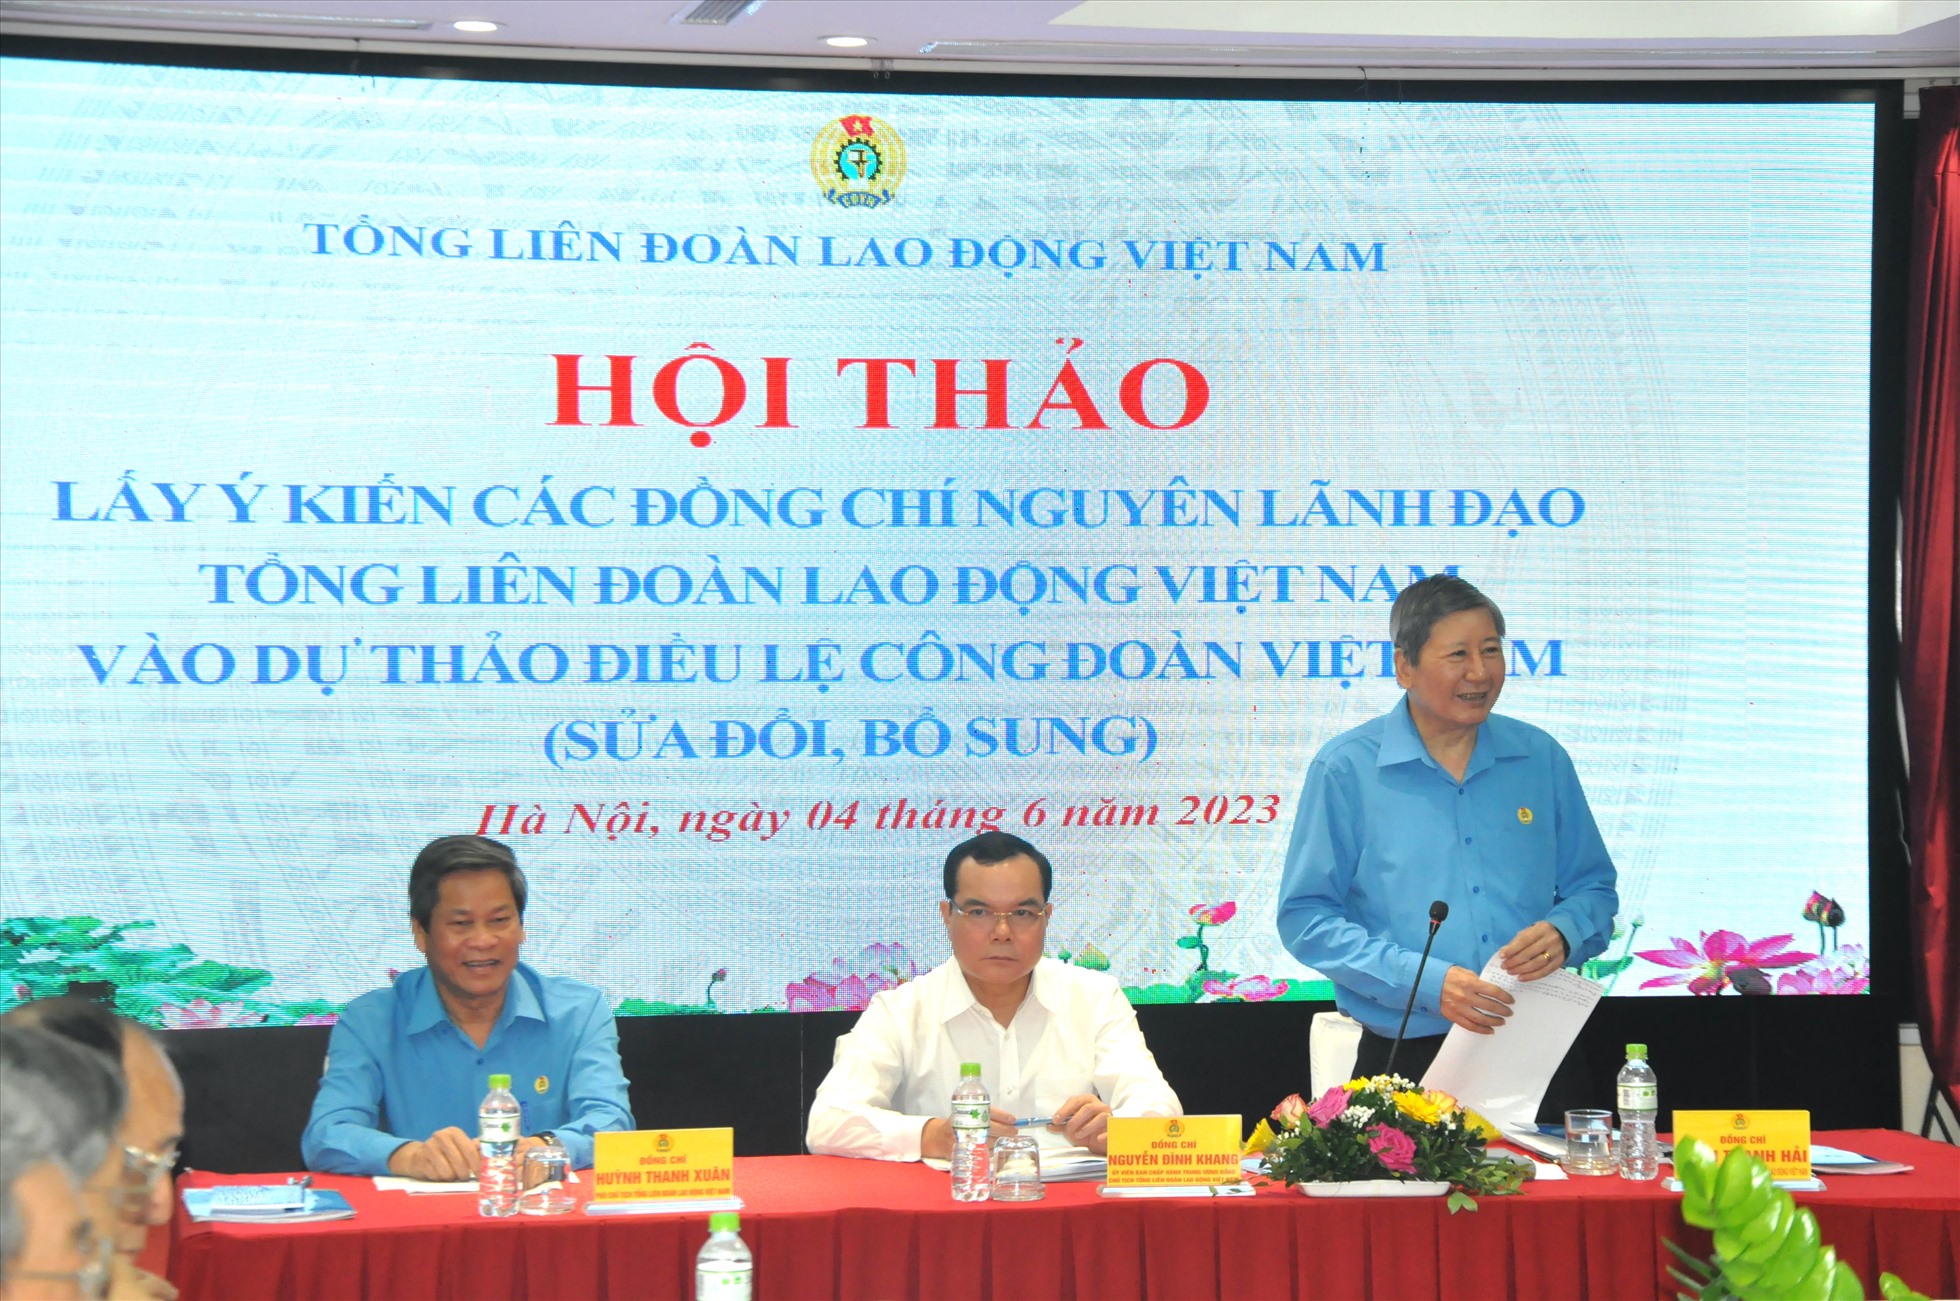 Ông Trần Thanh Hải - Phó Chủ tịch Thường trực Tổng Liên đoàn Lao động Việt Nam - phát biểu tại hội thảo. Ảnh: Quế Chi